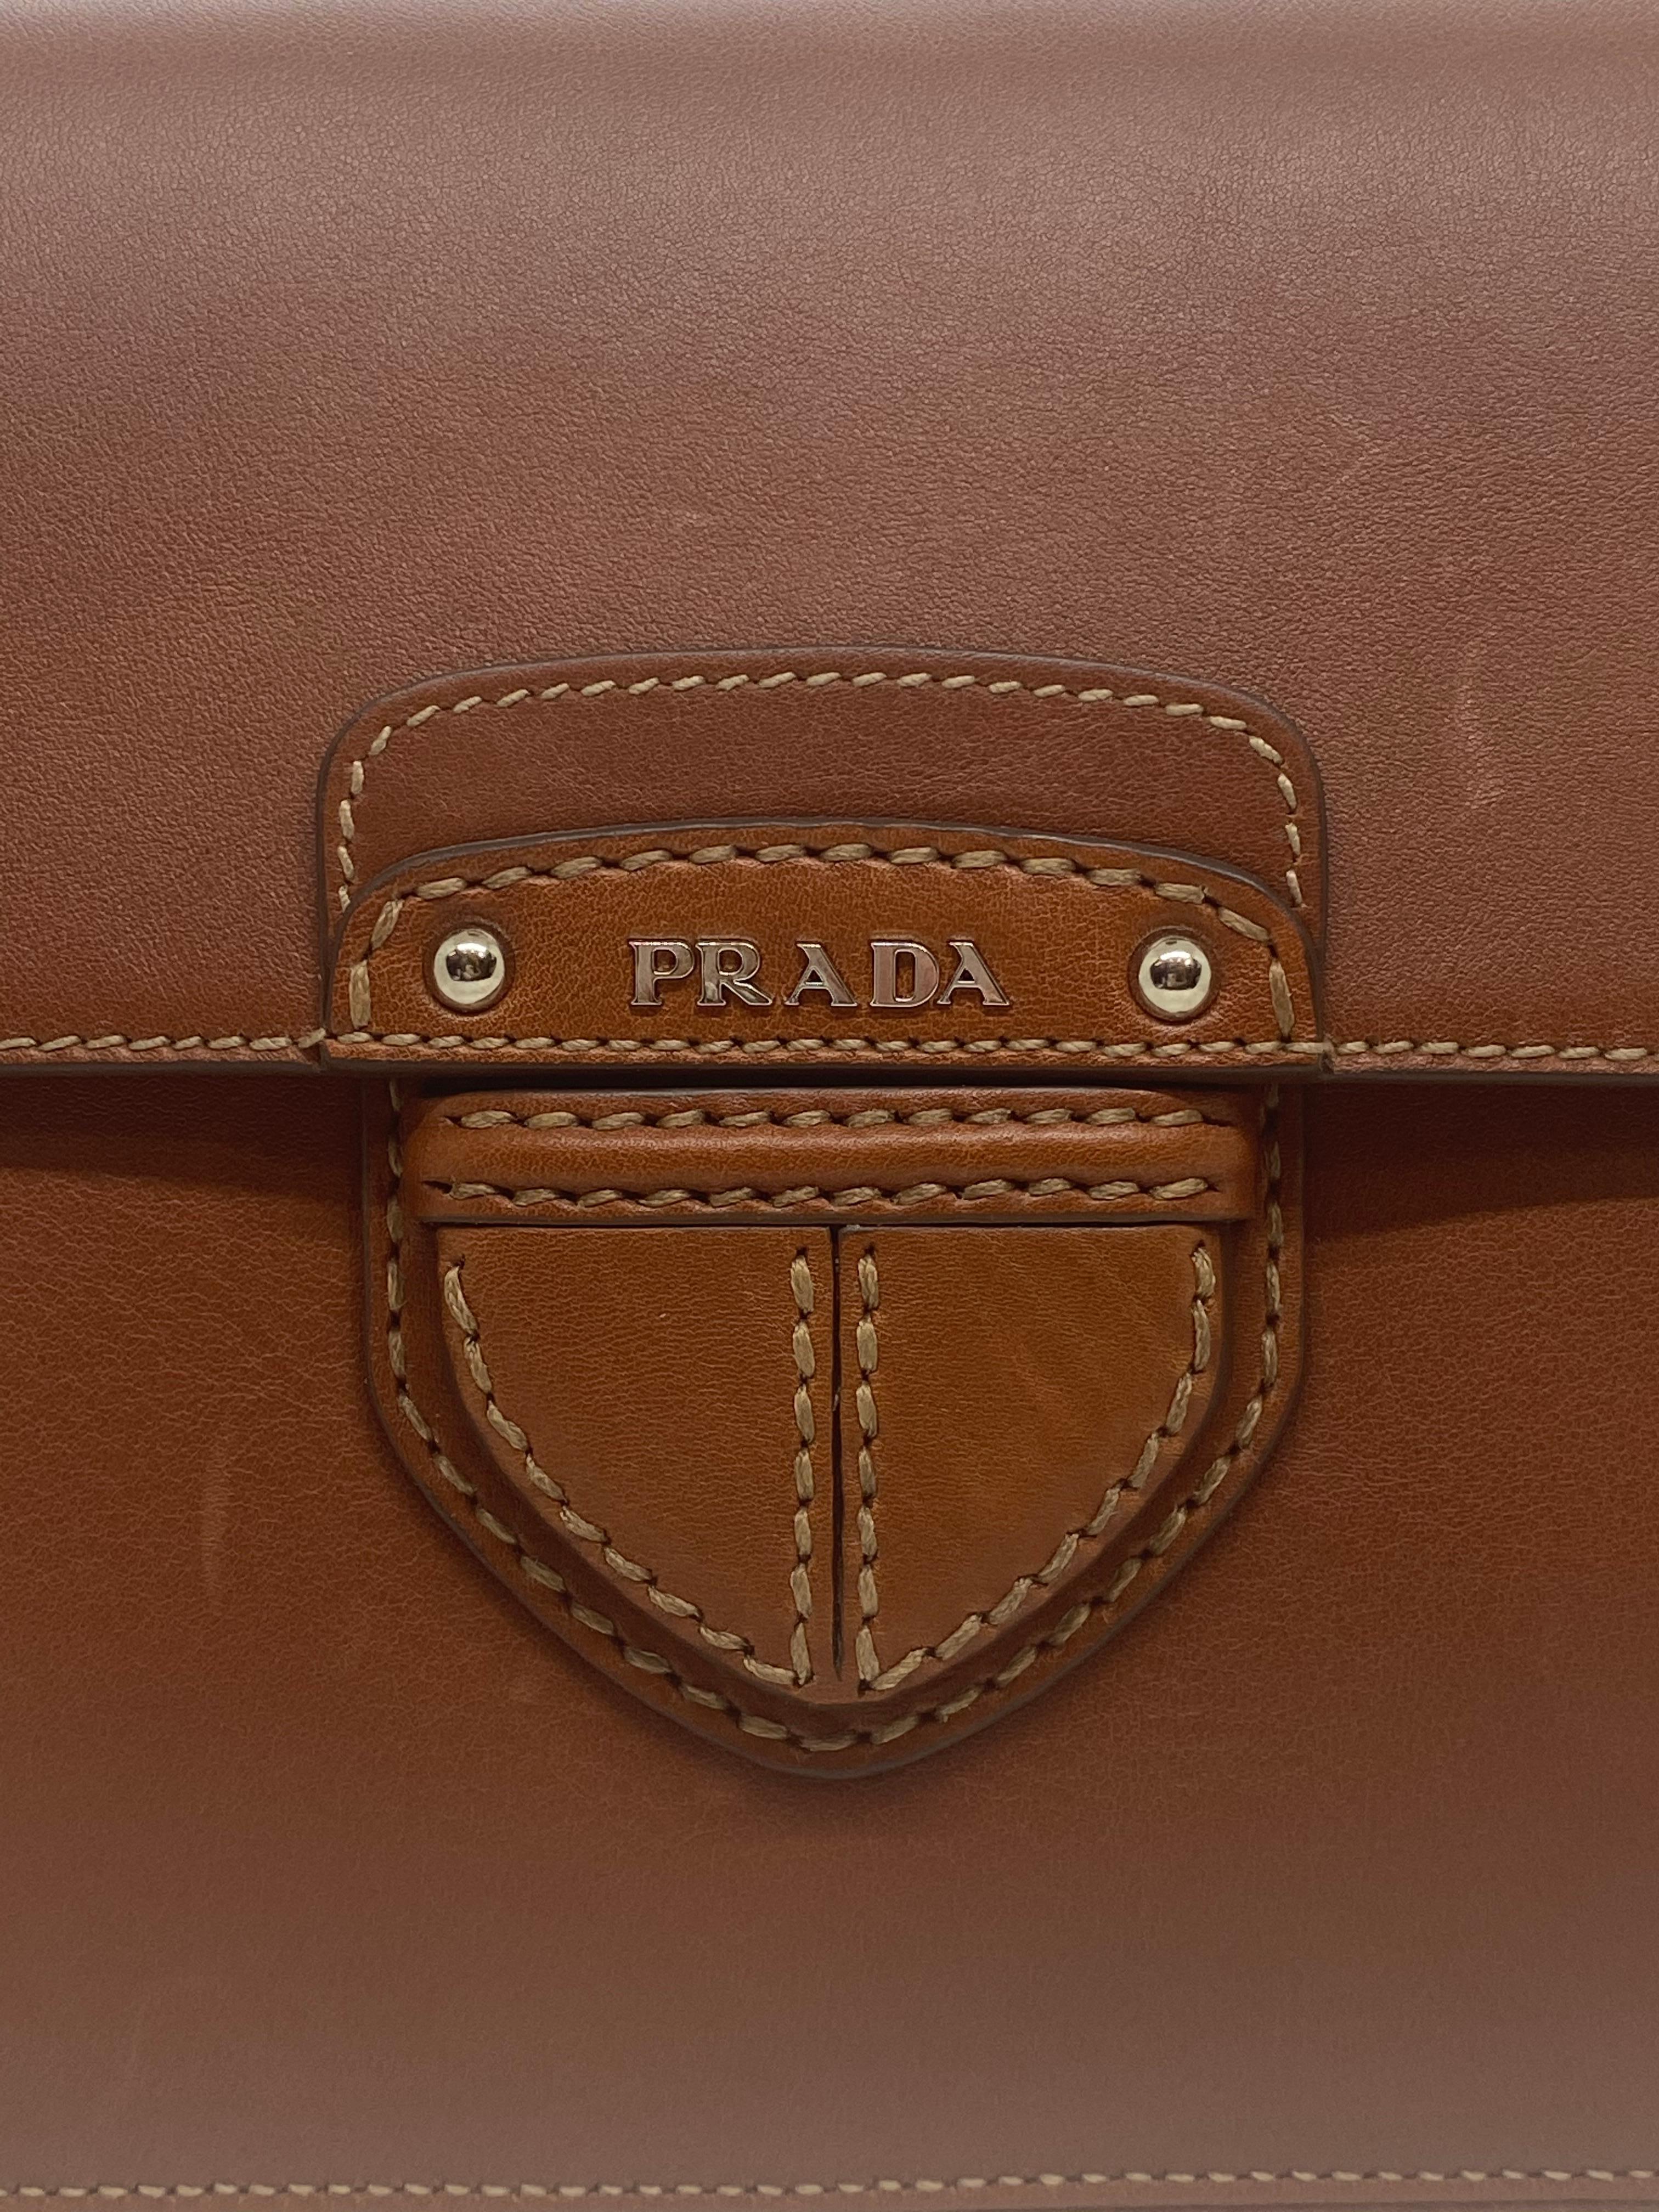 Prada Brandy City Calf Cinghiale Crossbody Flap Messenger Bag, 2011. 3